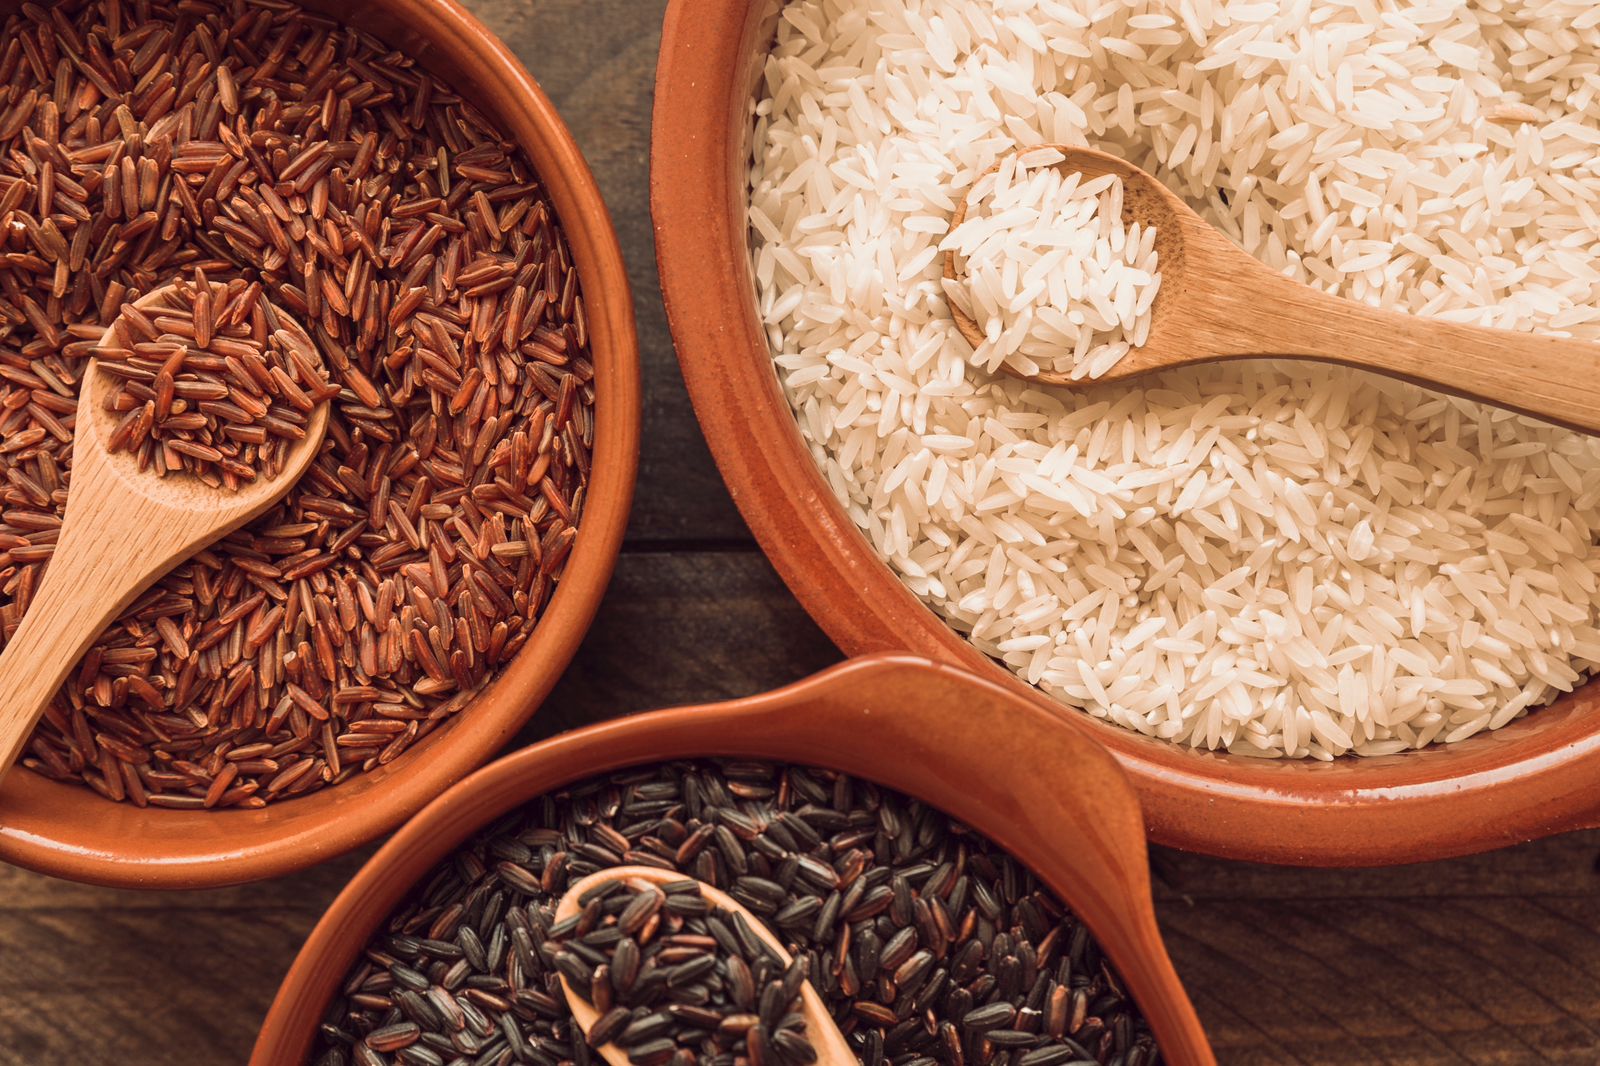 Nasi Merah vs Nasi Putih, Mana yang Lebih Menyehatkan? 